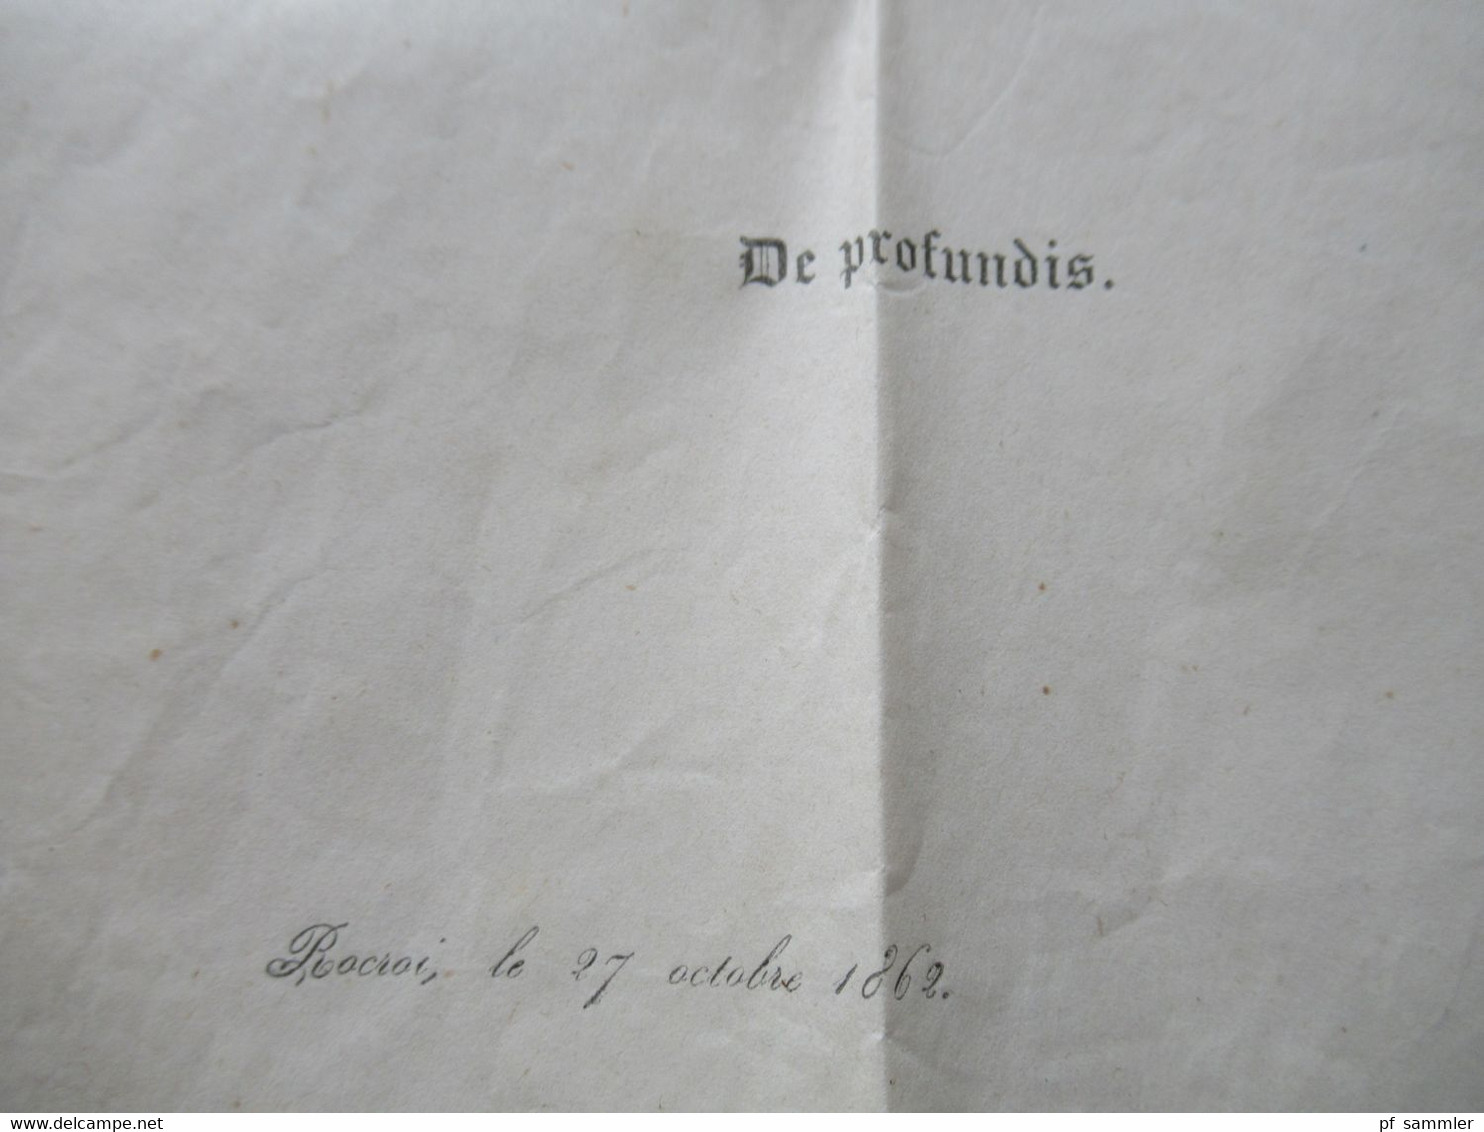 Frankreich Napoléon III. Michel Nr.12 Type II EF gedruckter Brief Le Prevost Ferdinand Remy / Trauerbrief / De profundis